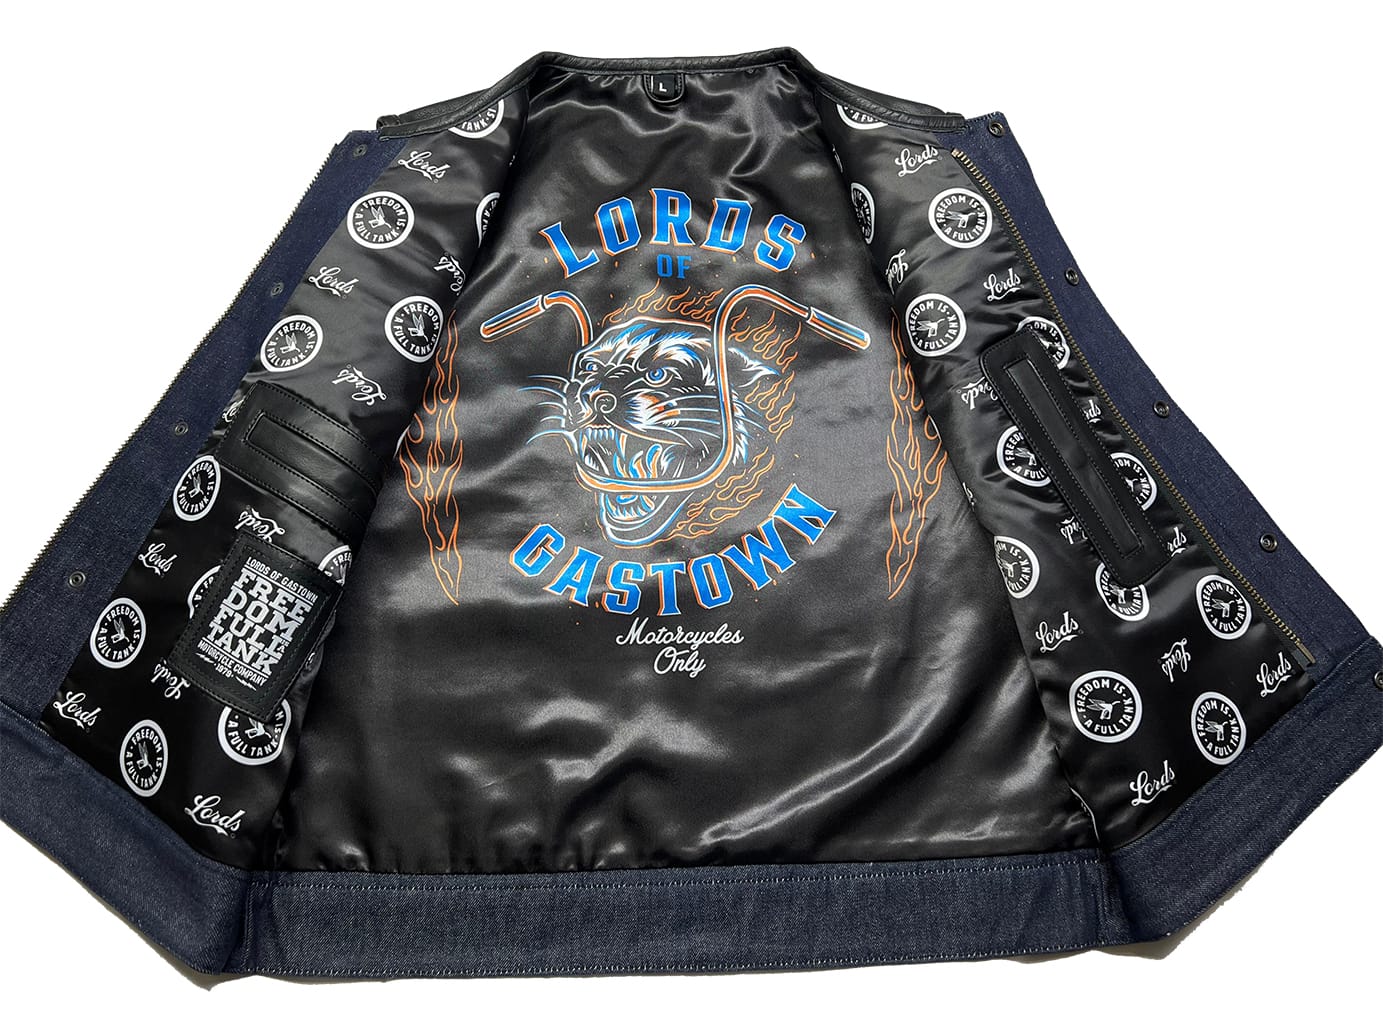 Lords x Cleaver Culture Moto Vest - Blue/Black